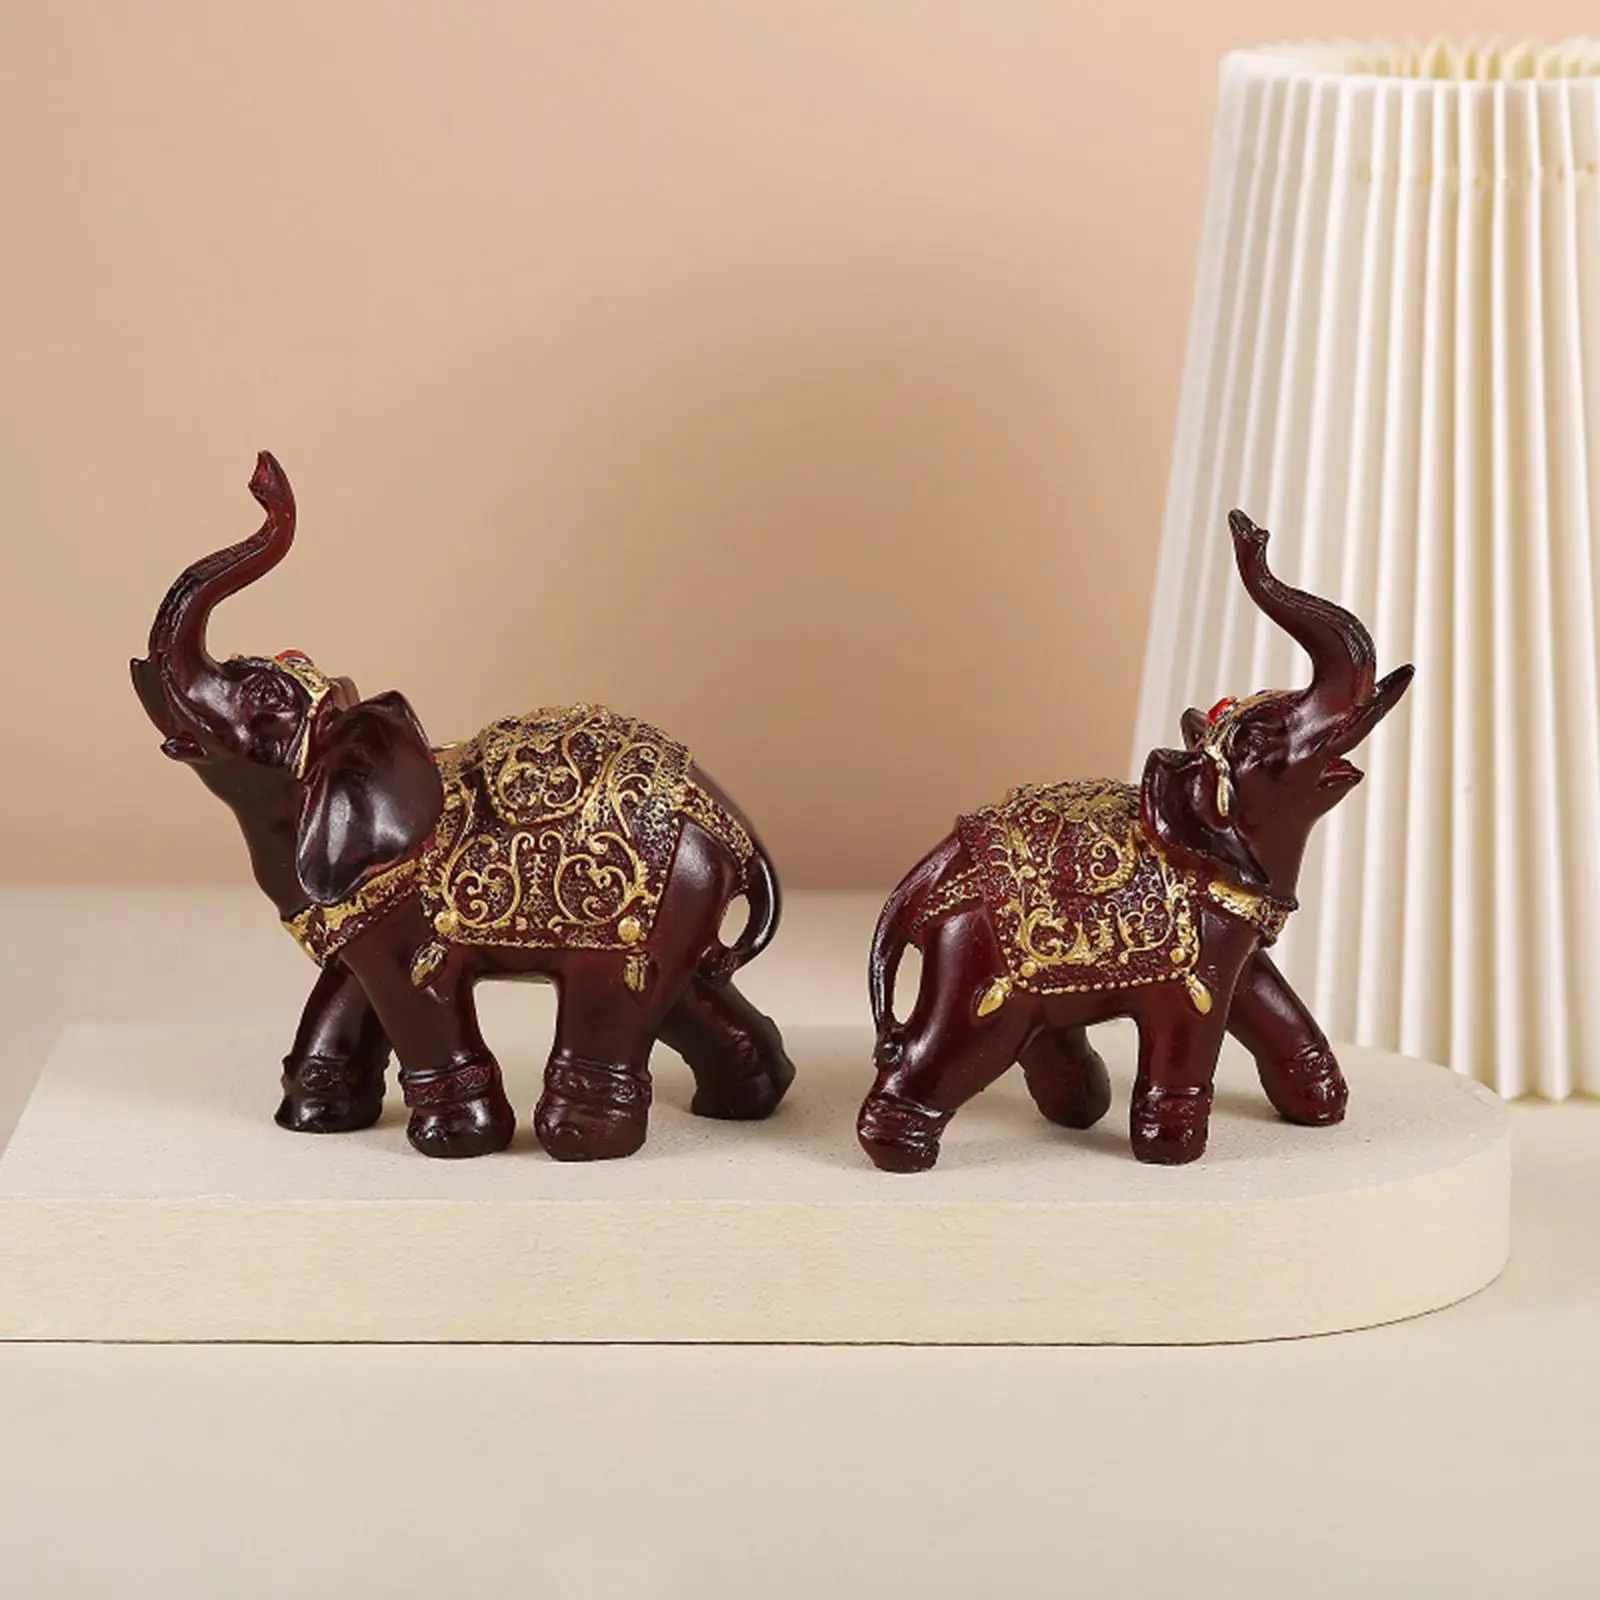 Elephant Statue Ornament Animal Figurine Feng Shui Sculpture for Desktop Bedroom Living Room Decoration Gift